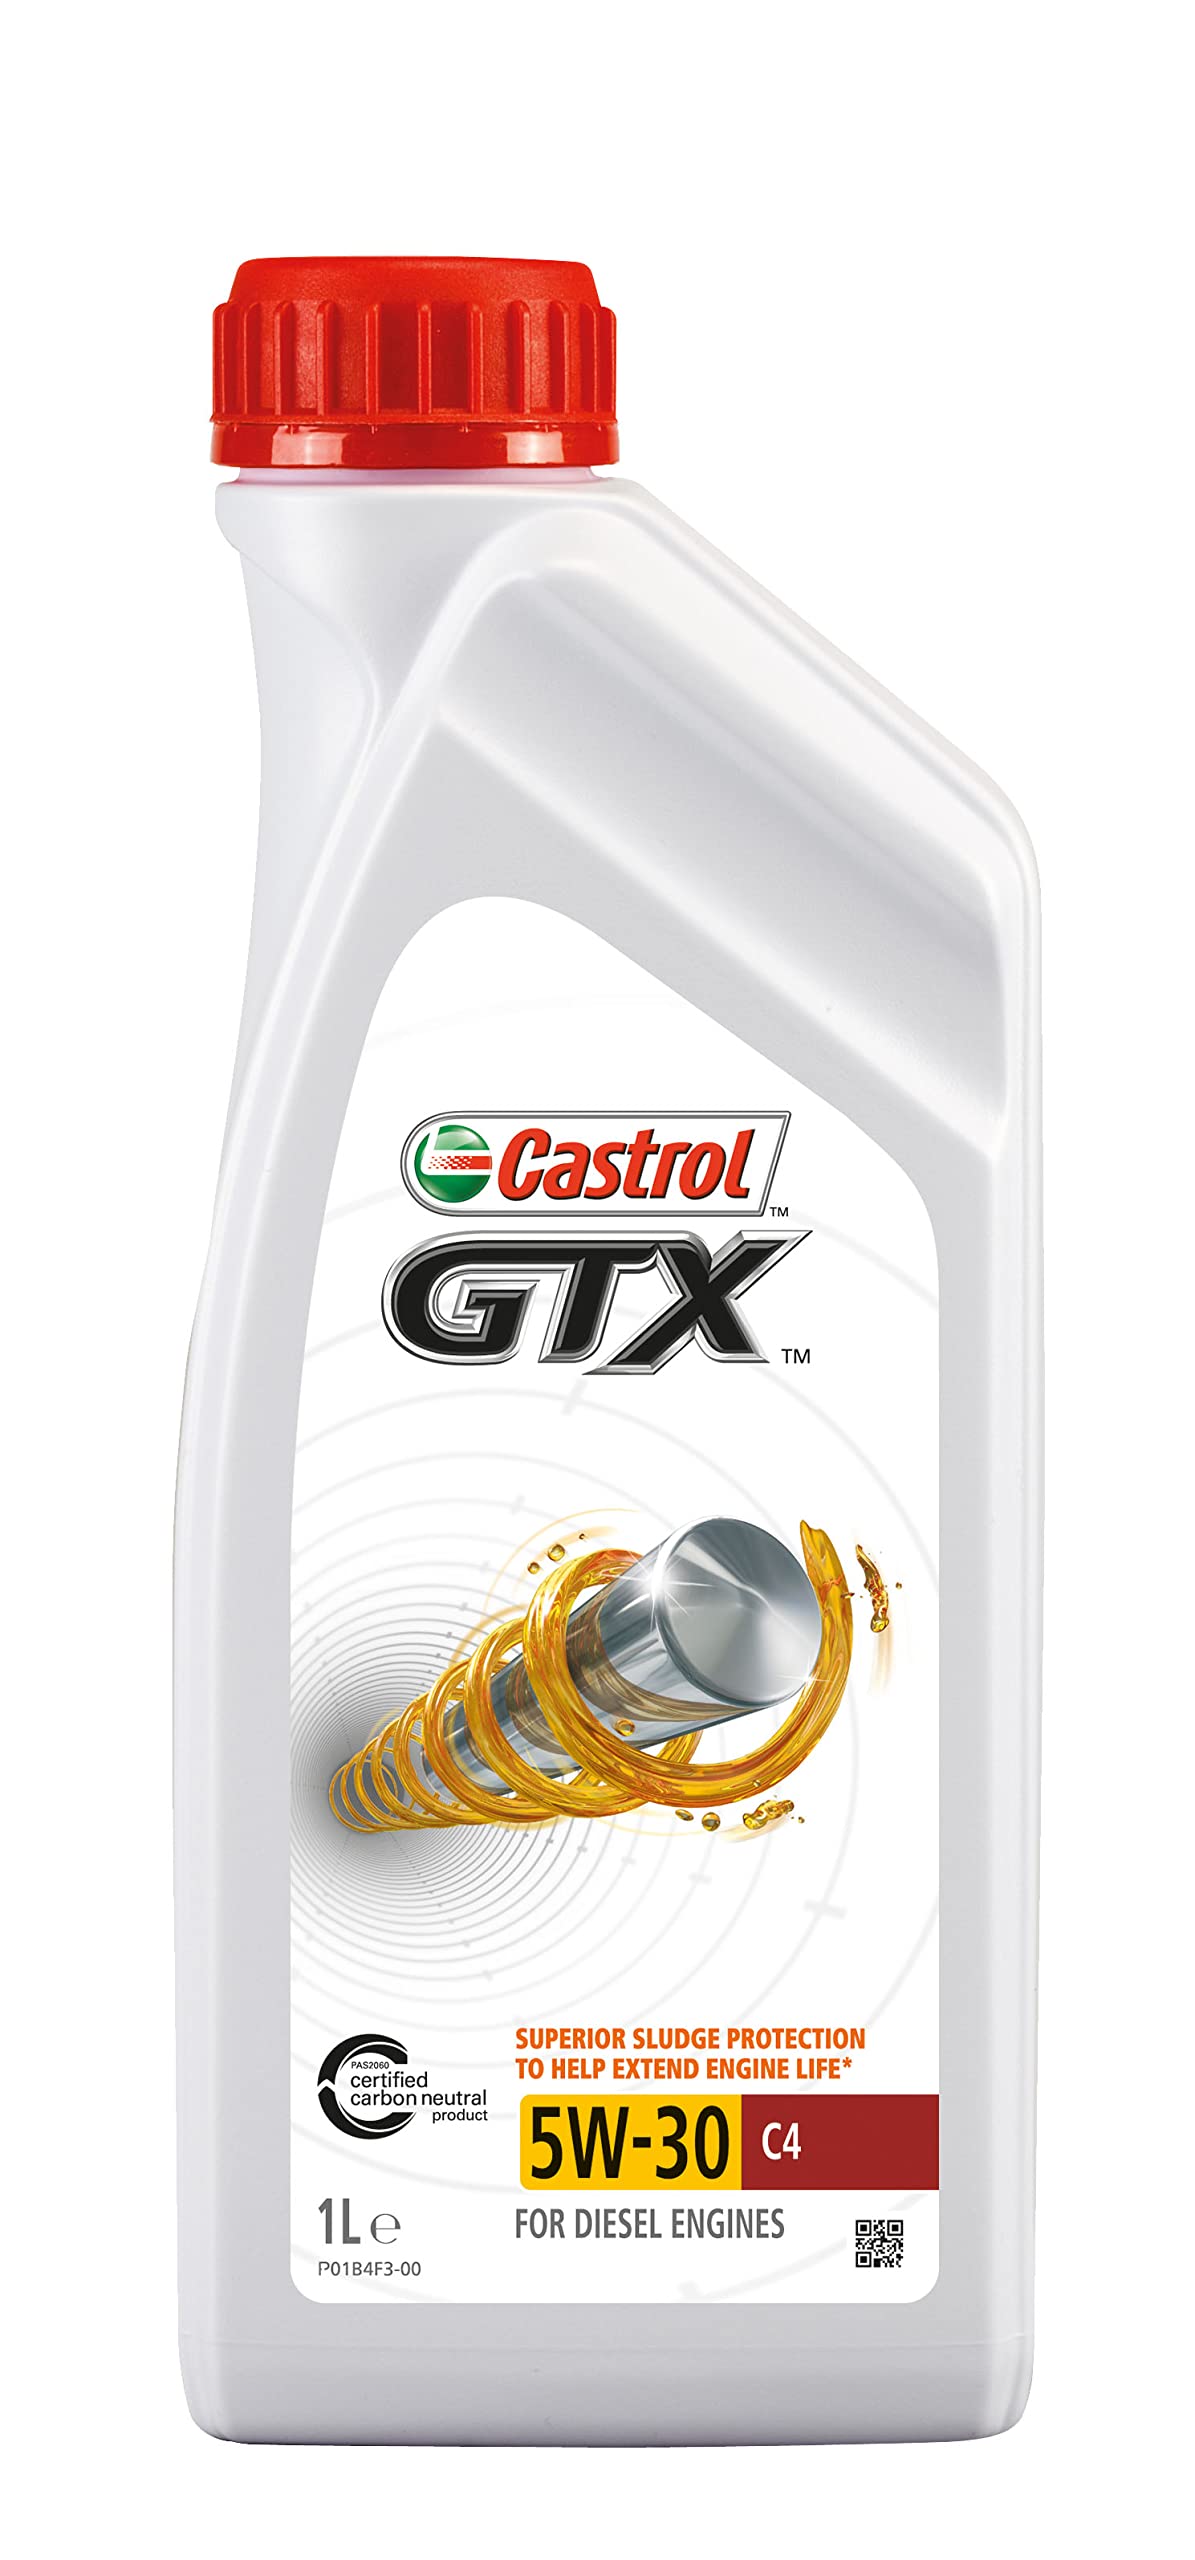 Castrol GTX 5W-30 C4, 1 Liter von Castrol